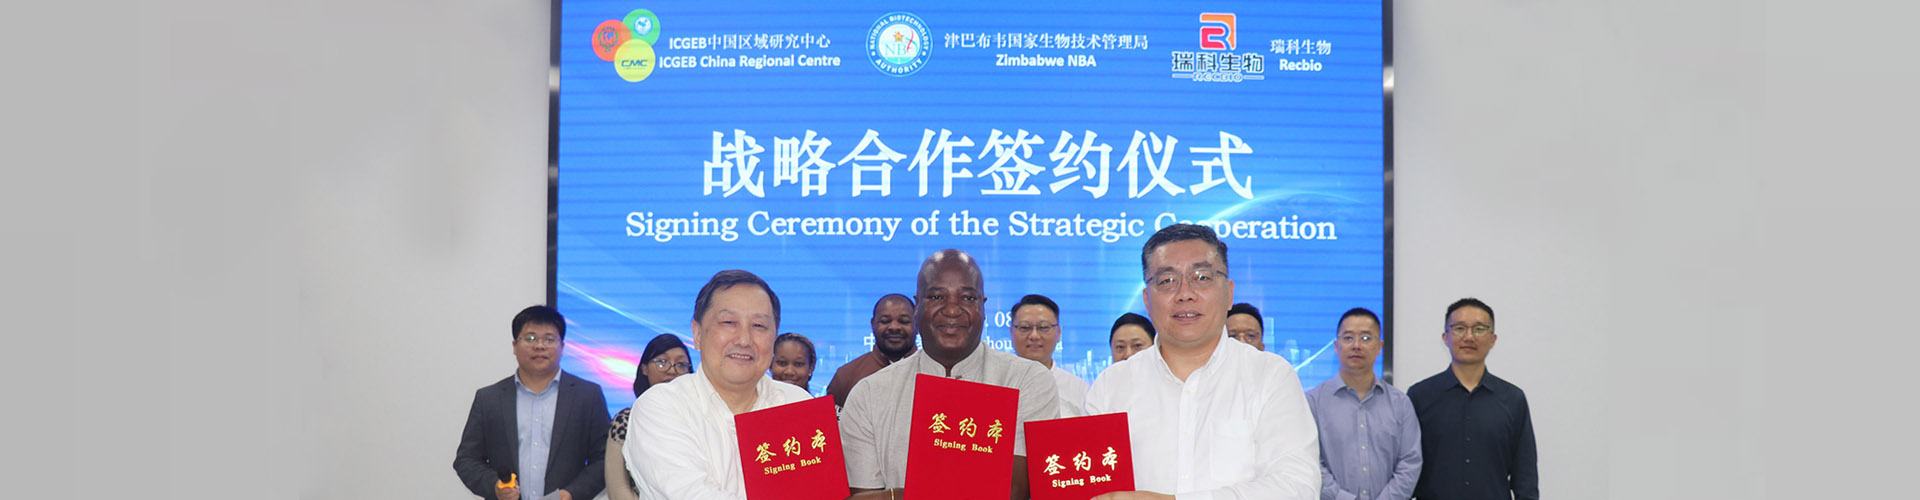 中心促成中国医药城企业达成跨国双赢合作